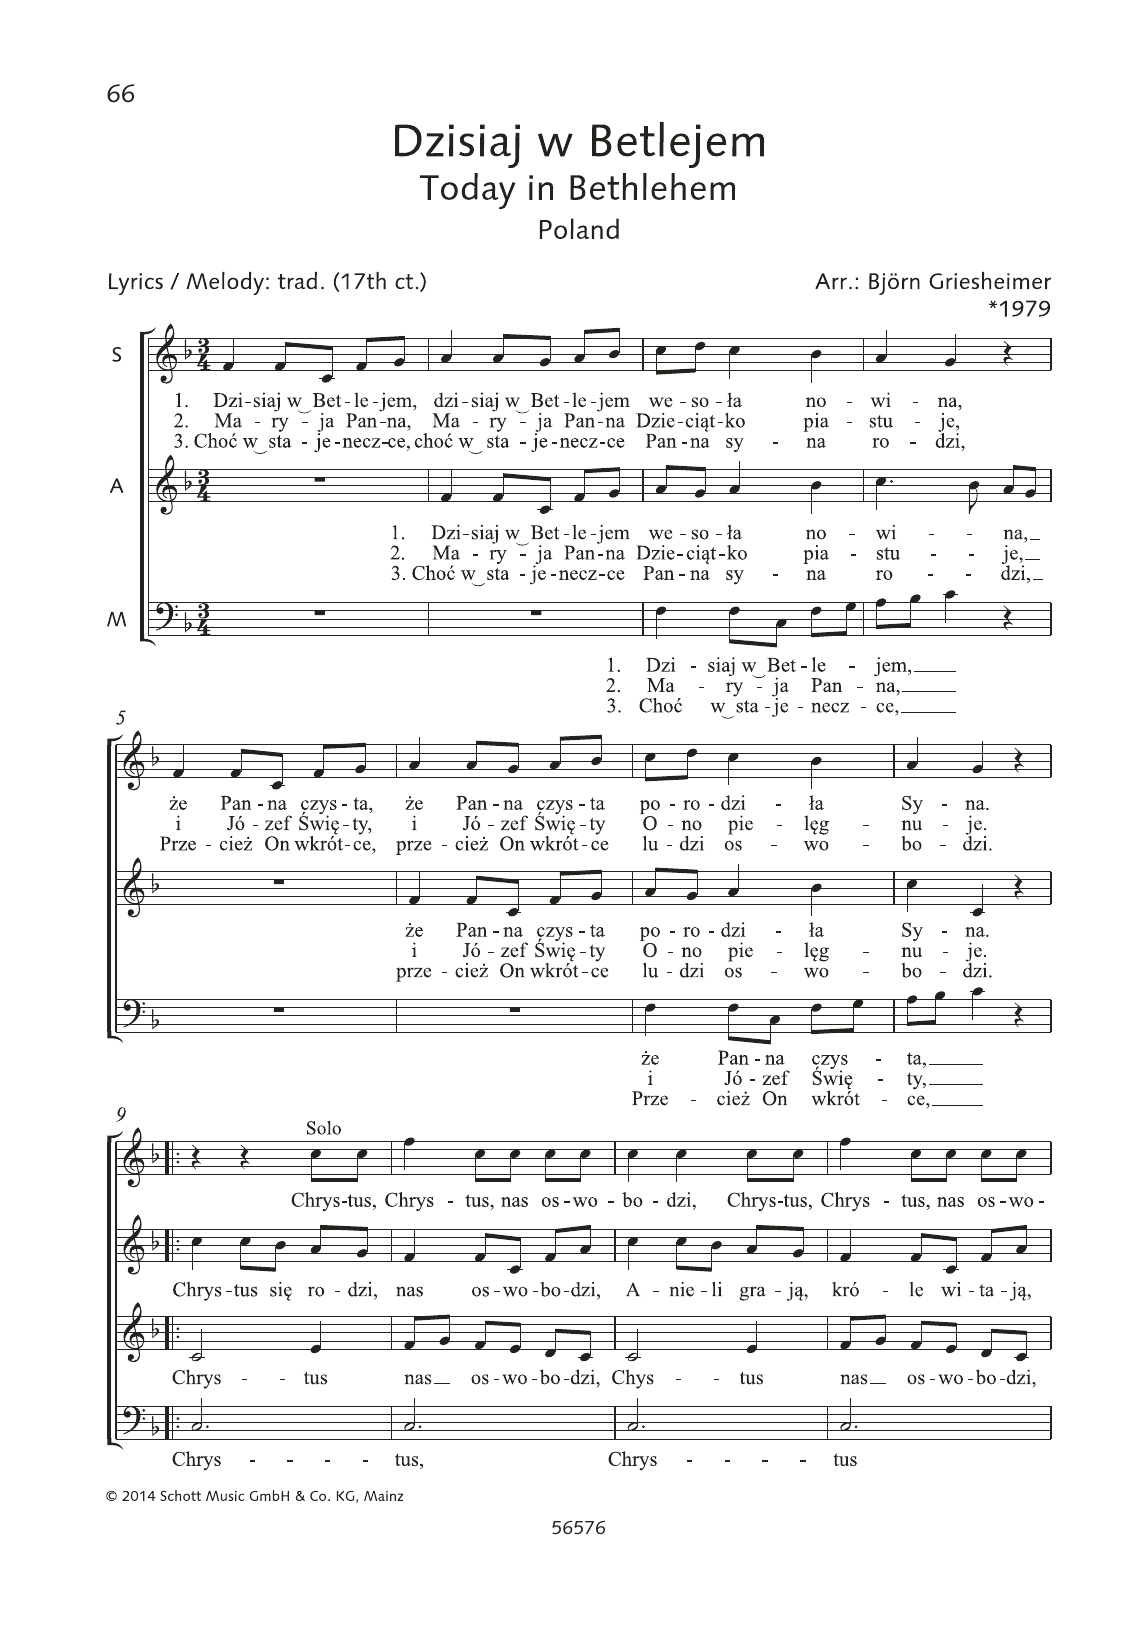 Dzisiaj w Betlejem sheet music